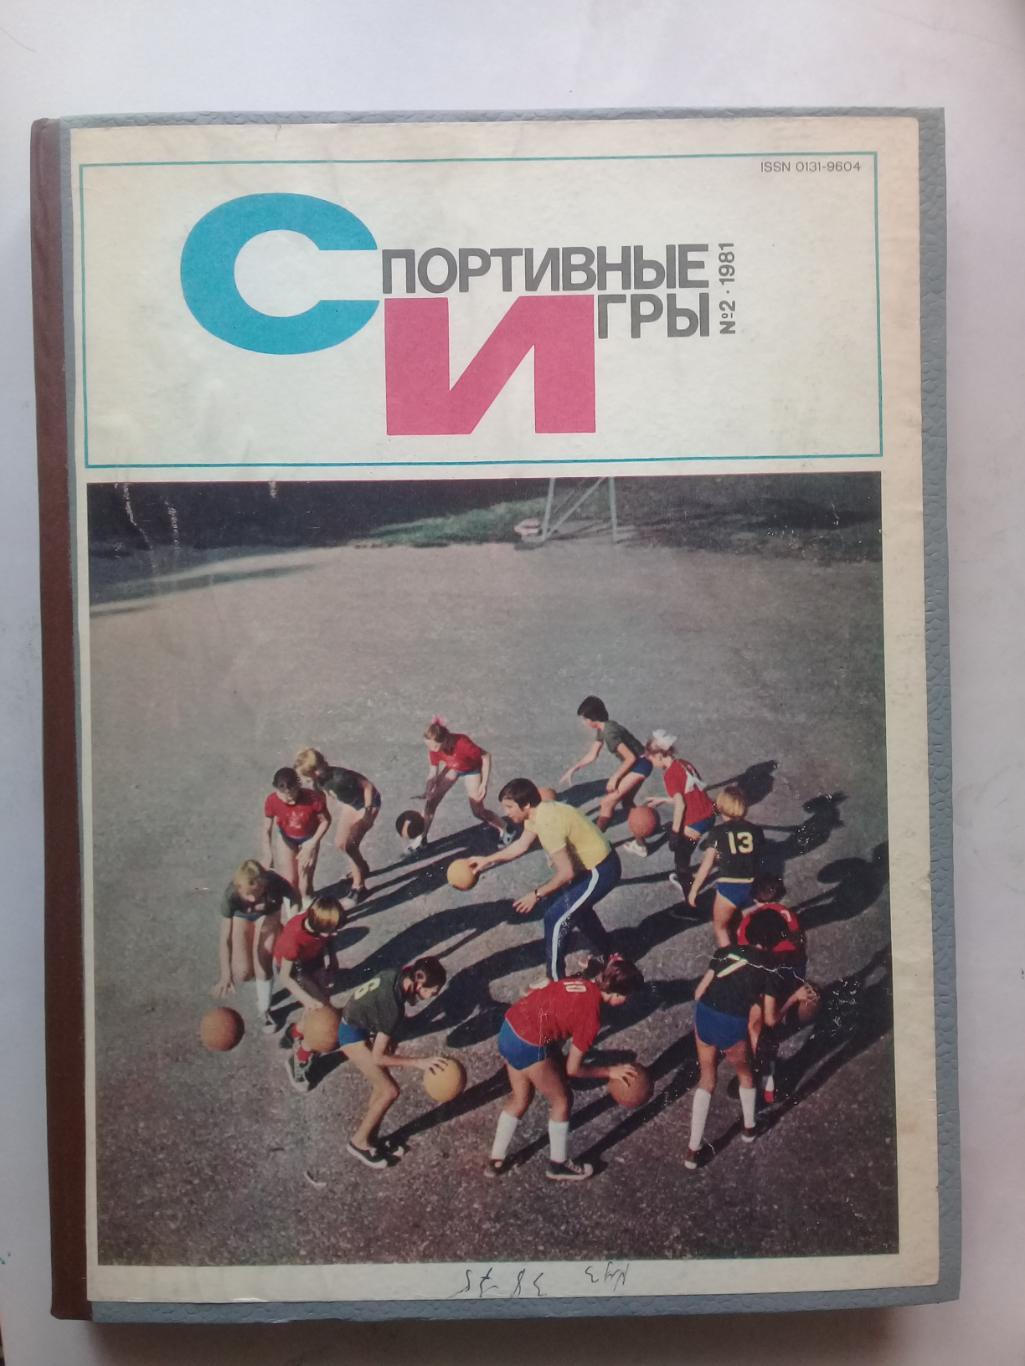 (Только для dk7586) Журнал Спортивные игры 1981 год. Годовой комплект.